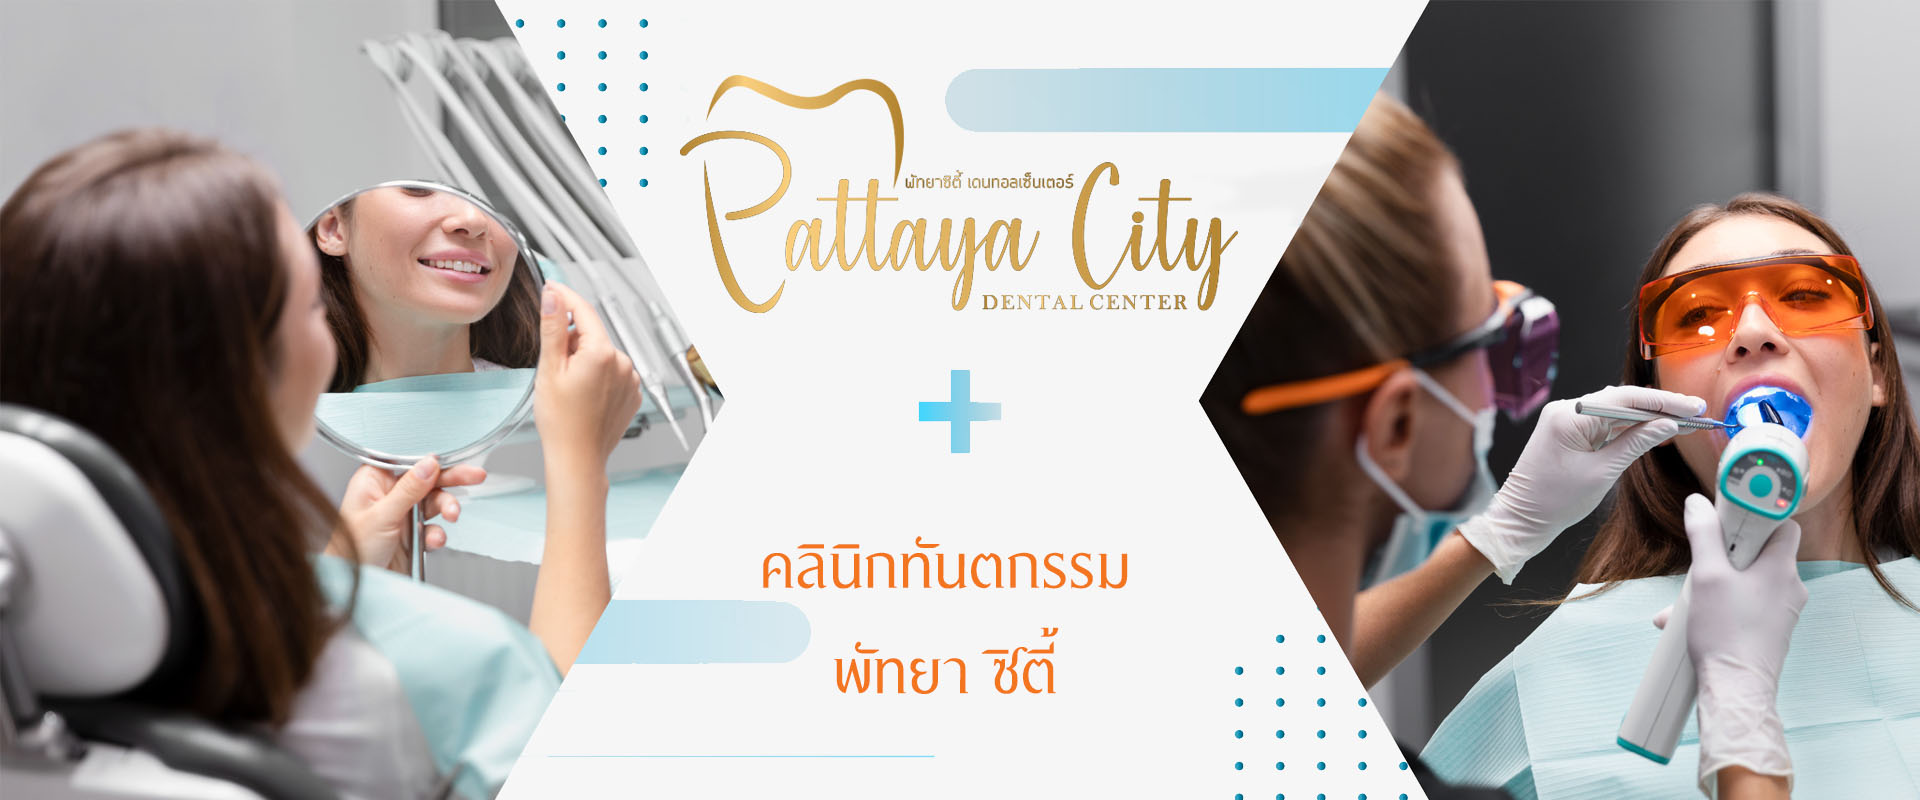 คลินิกทันตกรรม , Pattaya City Dental Center, รับทำฟัน, จัดฟัน, รักษารากฟัน Root Canal Treatment